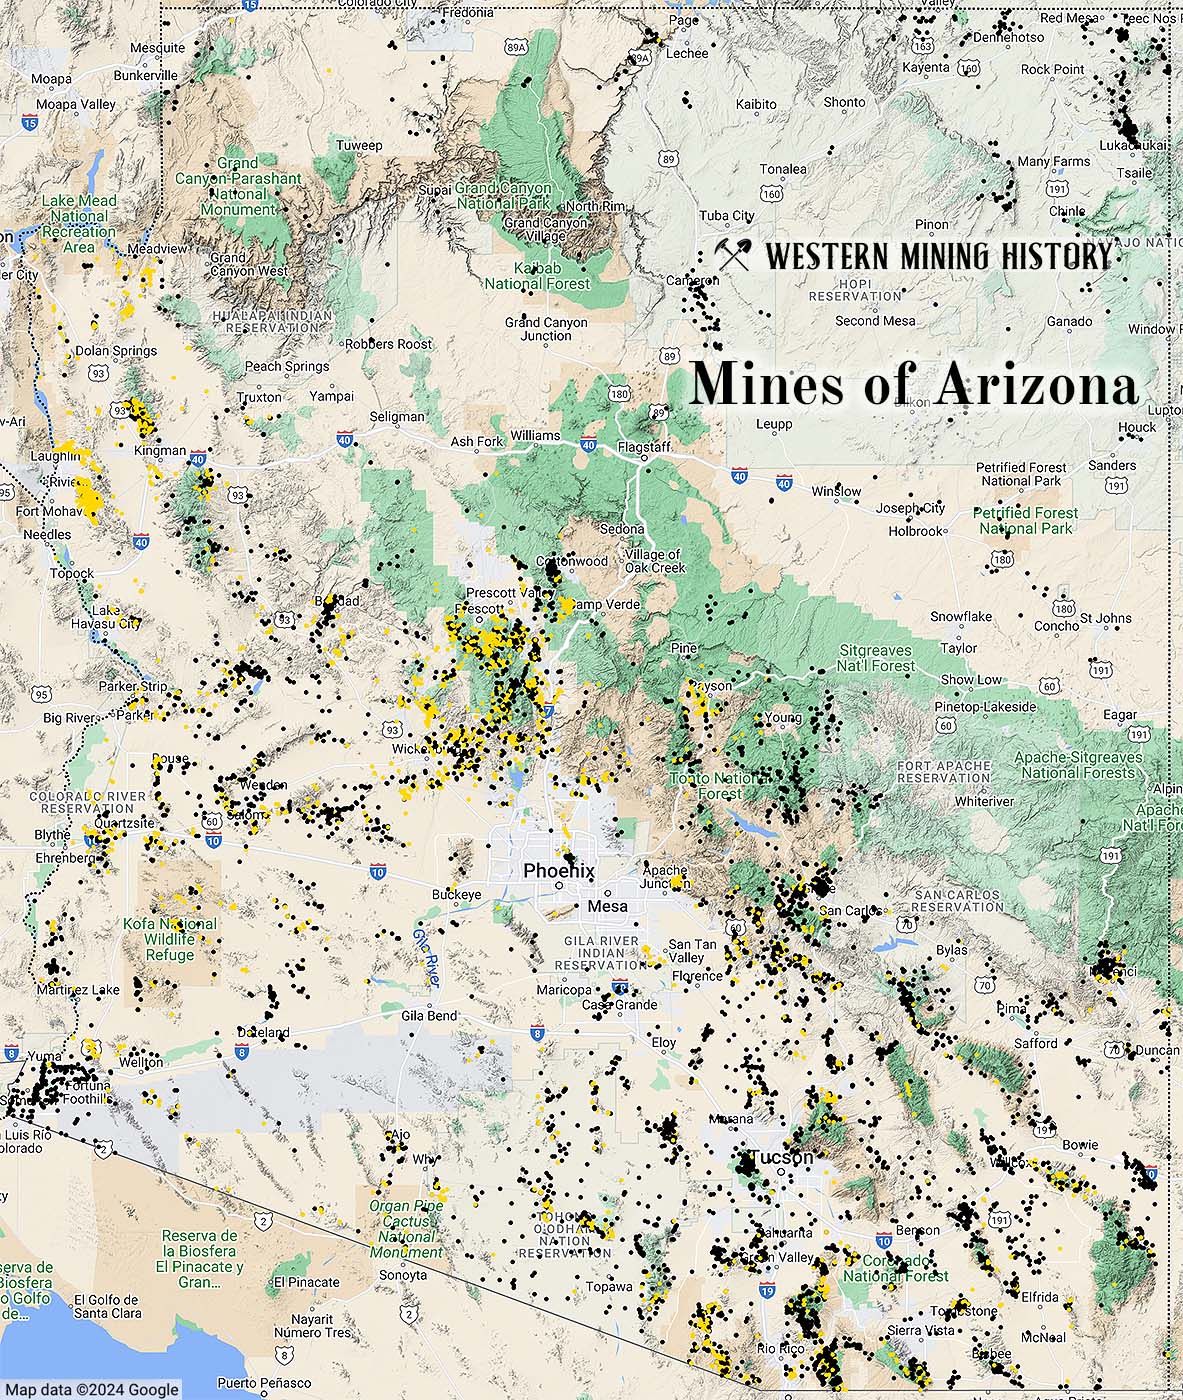 Arizona mines